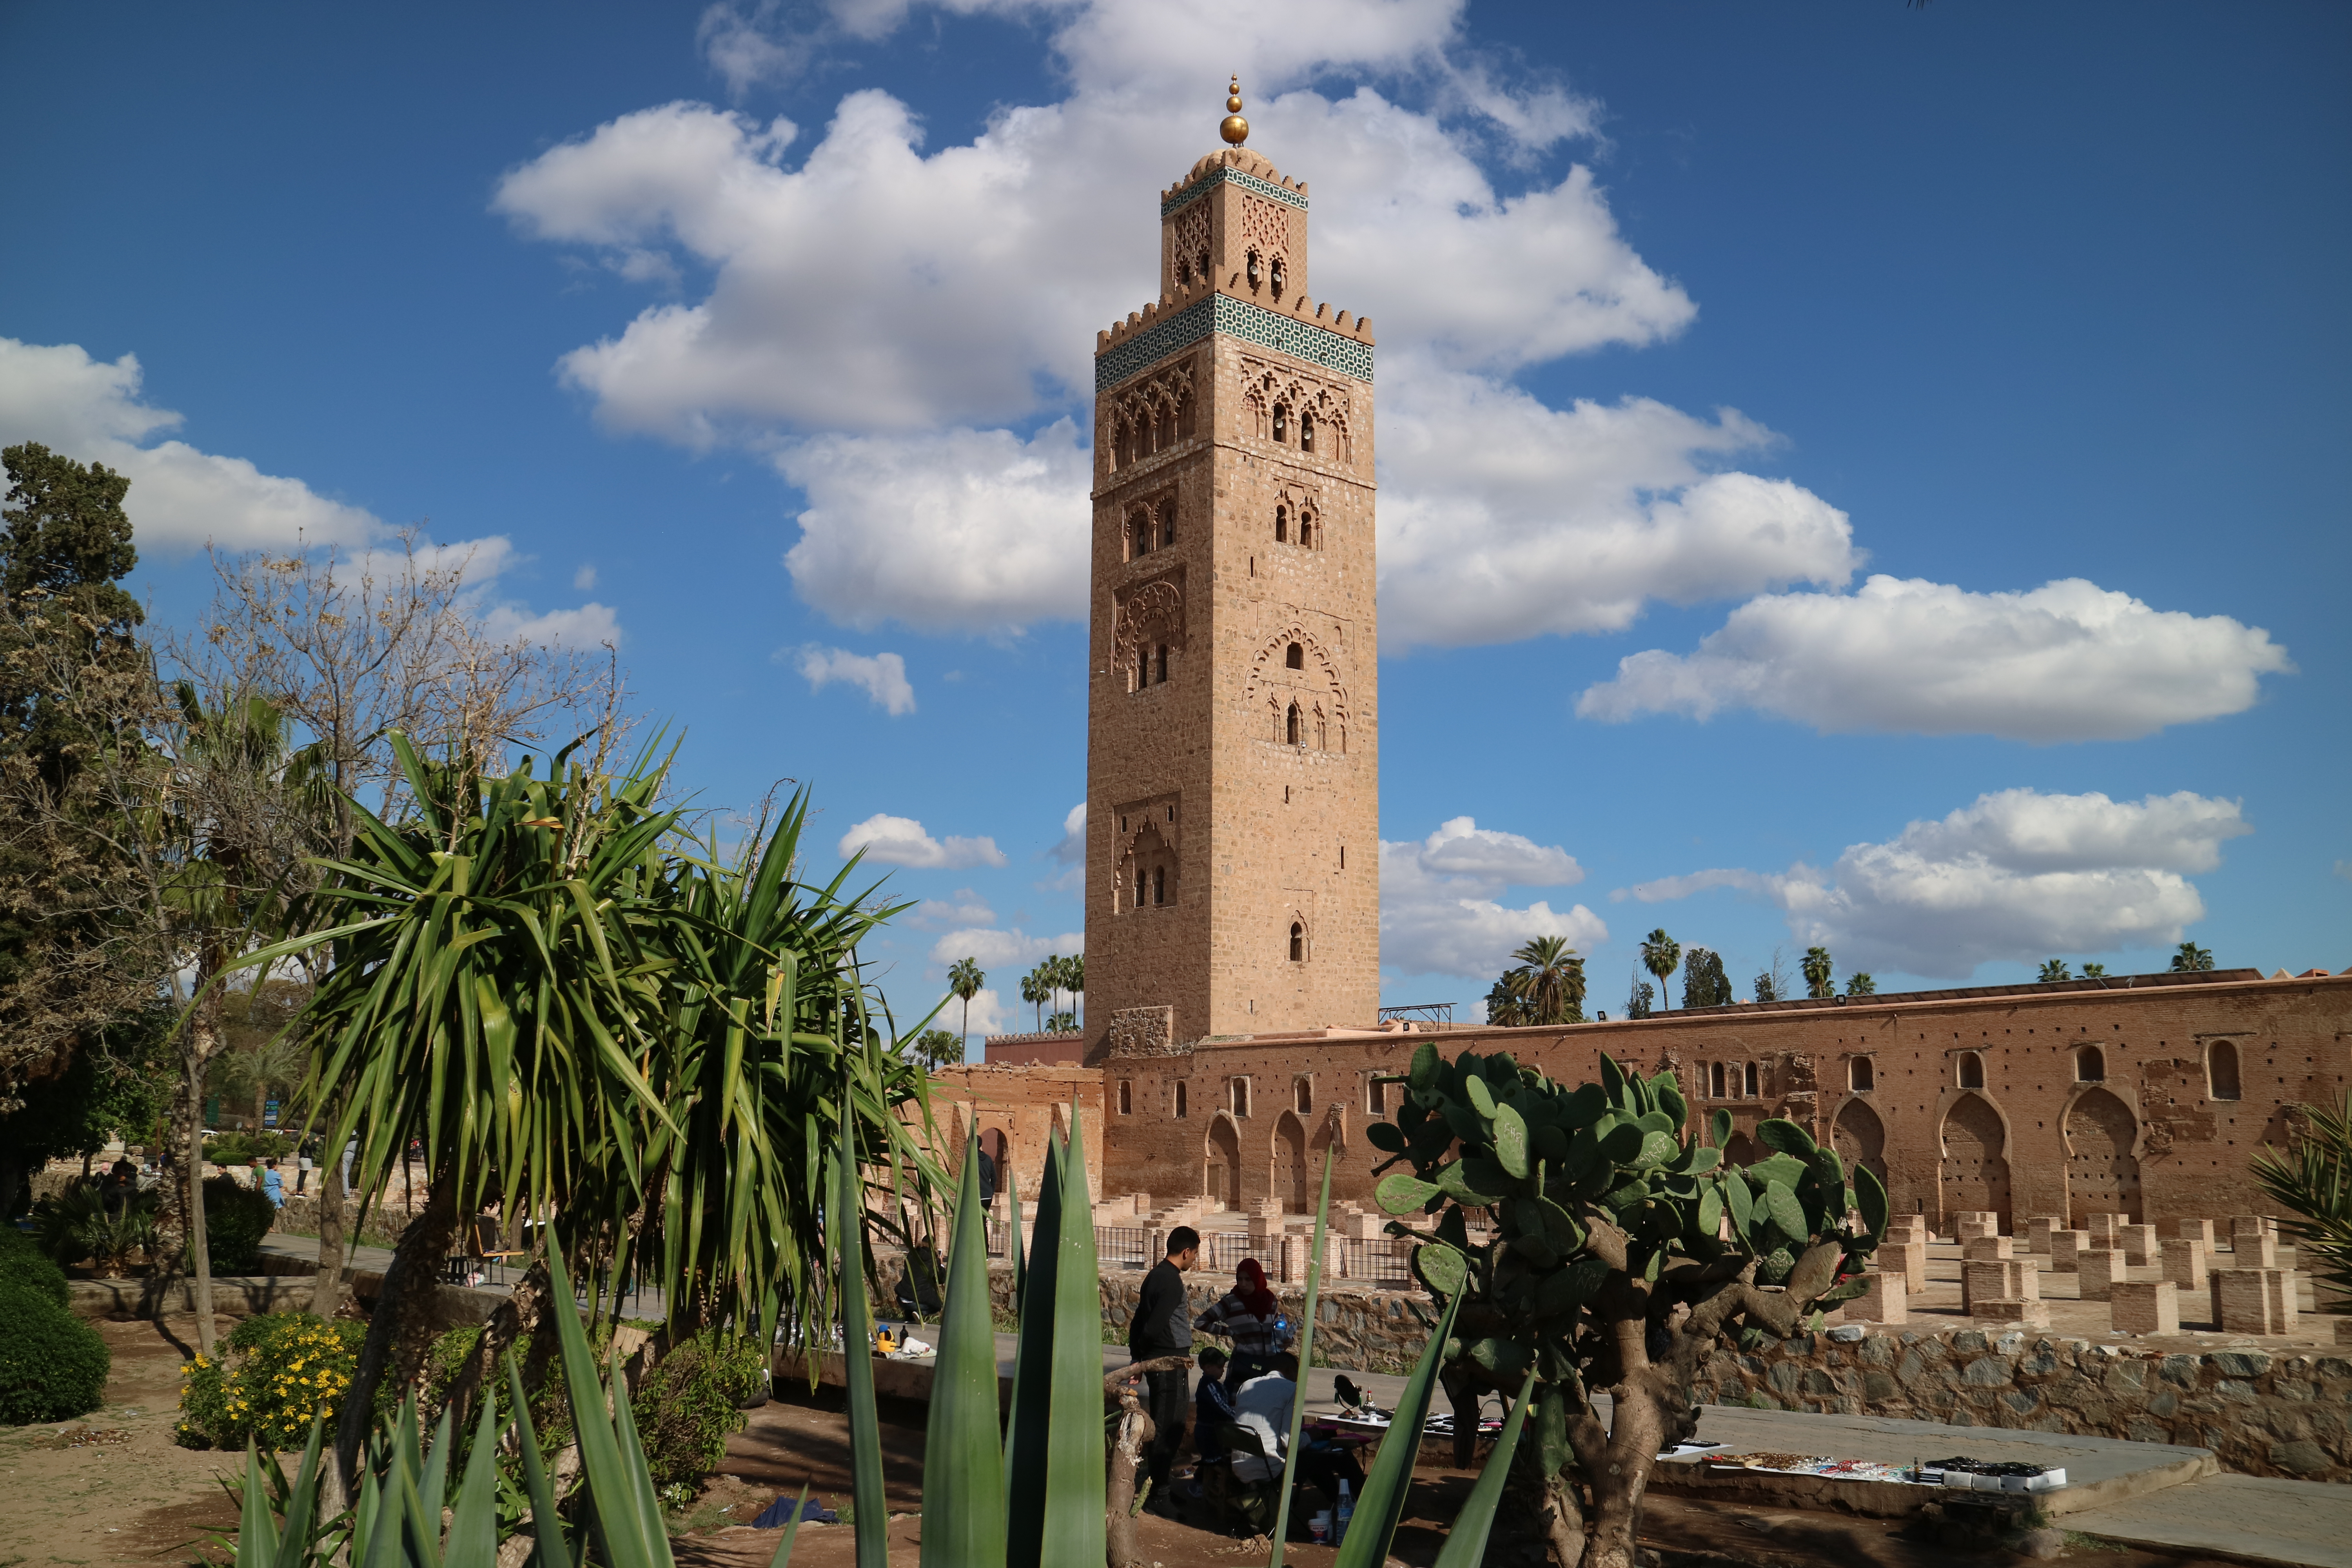 5 daagse combinatie reis koningsstad Marrakech, Agafay woestijn en Essouira kust